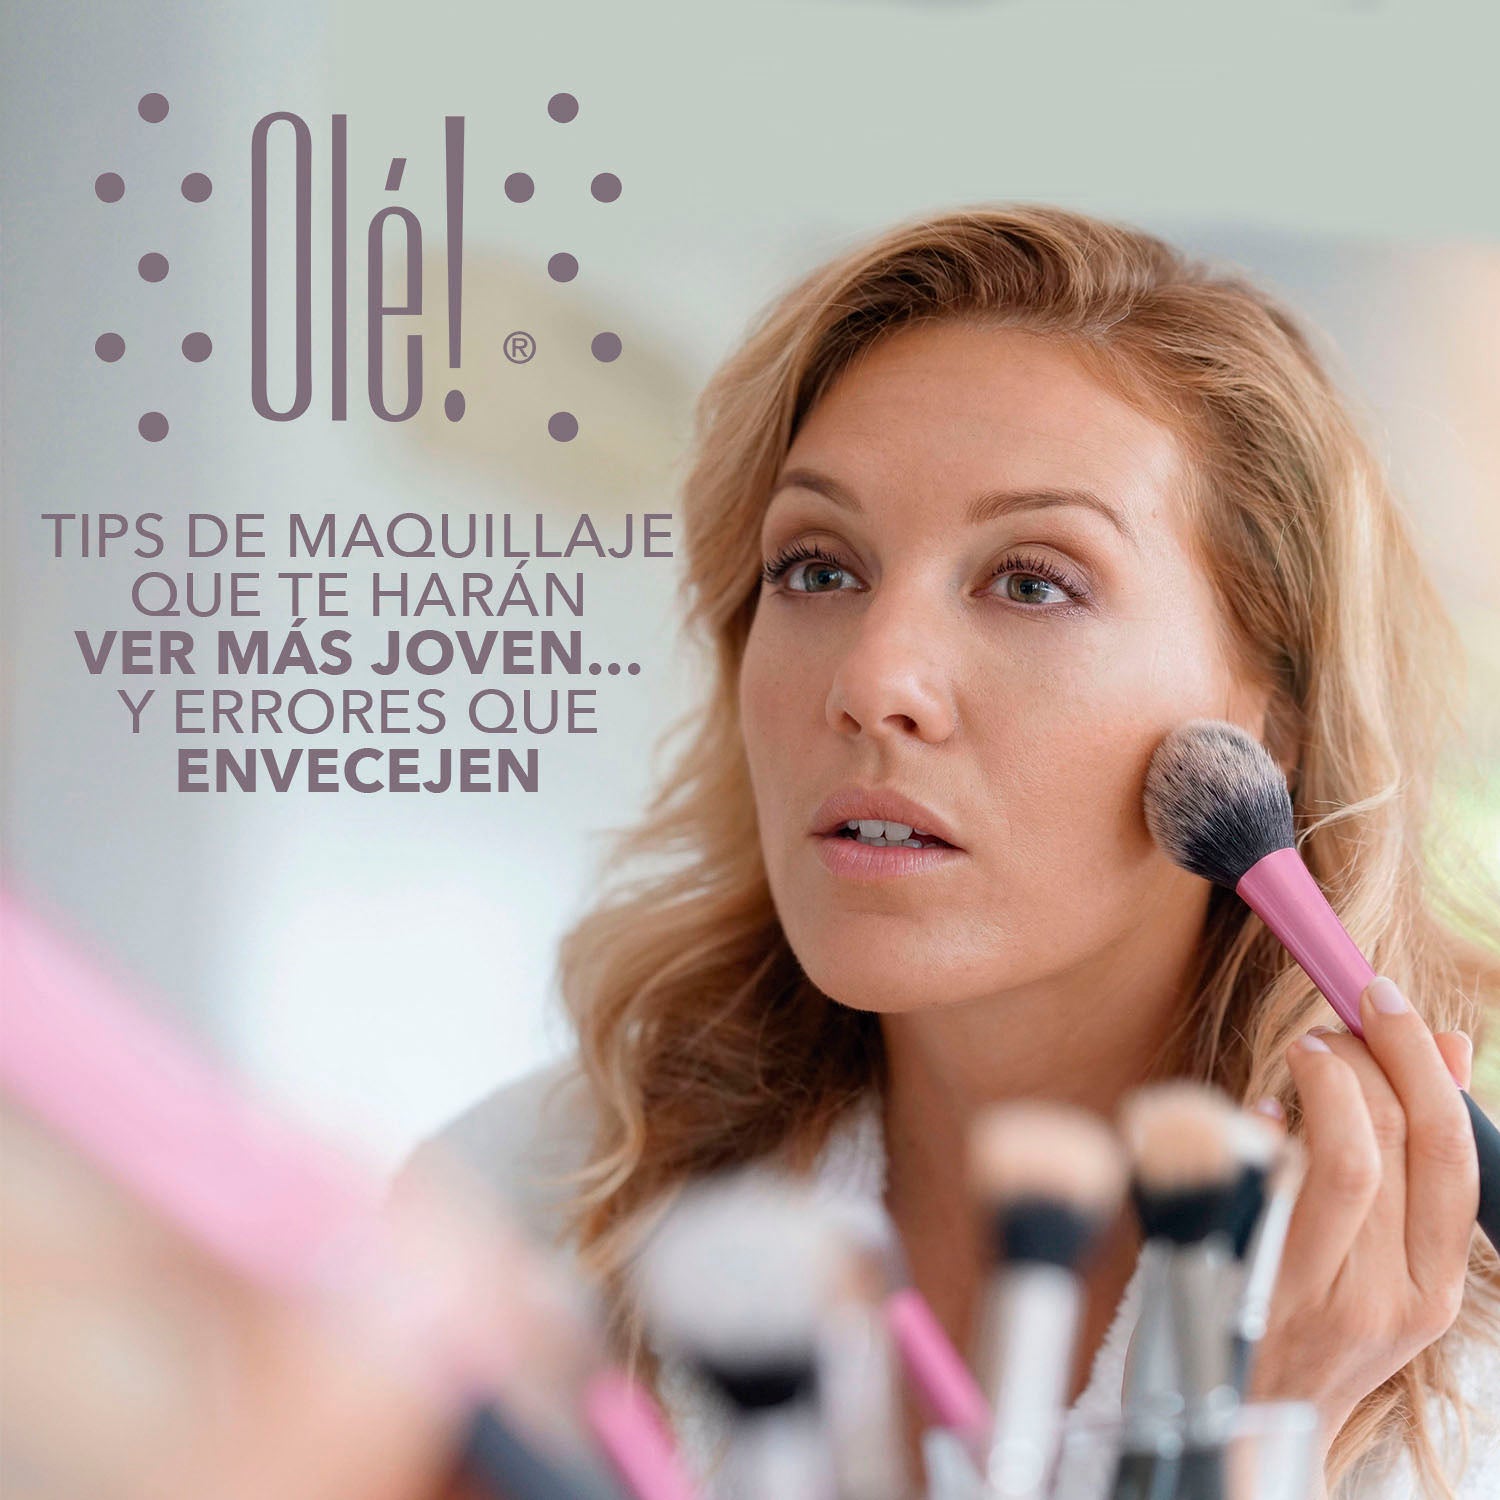 7 tips de maquillaje para verse más joven ¡Regresa el tiempo 10 años!